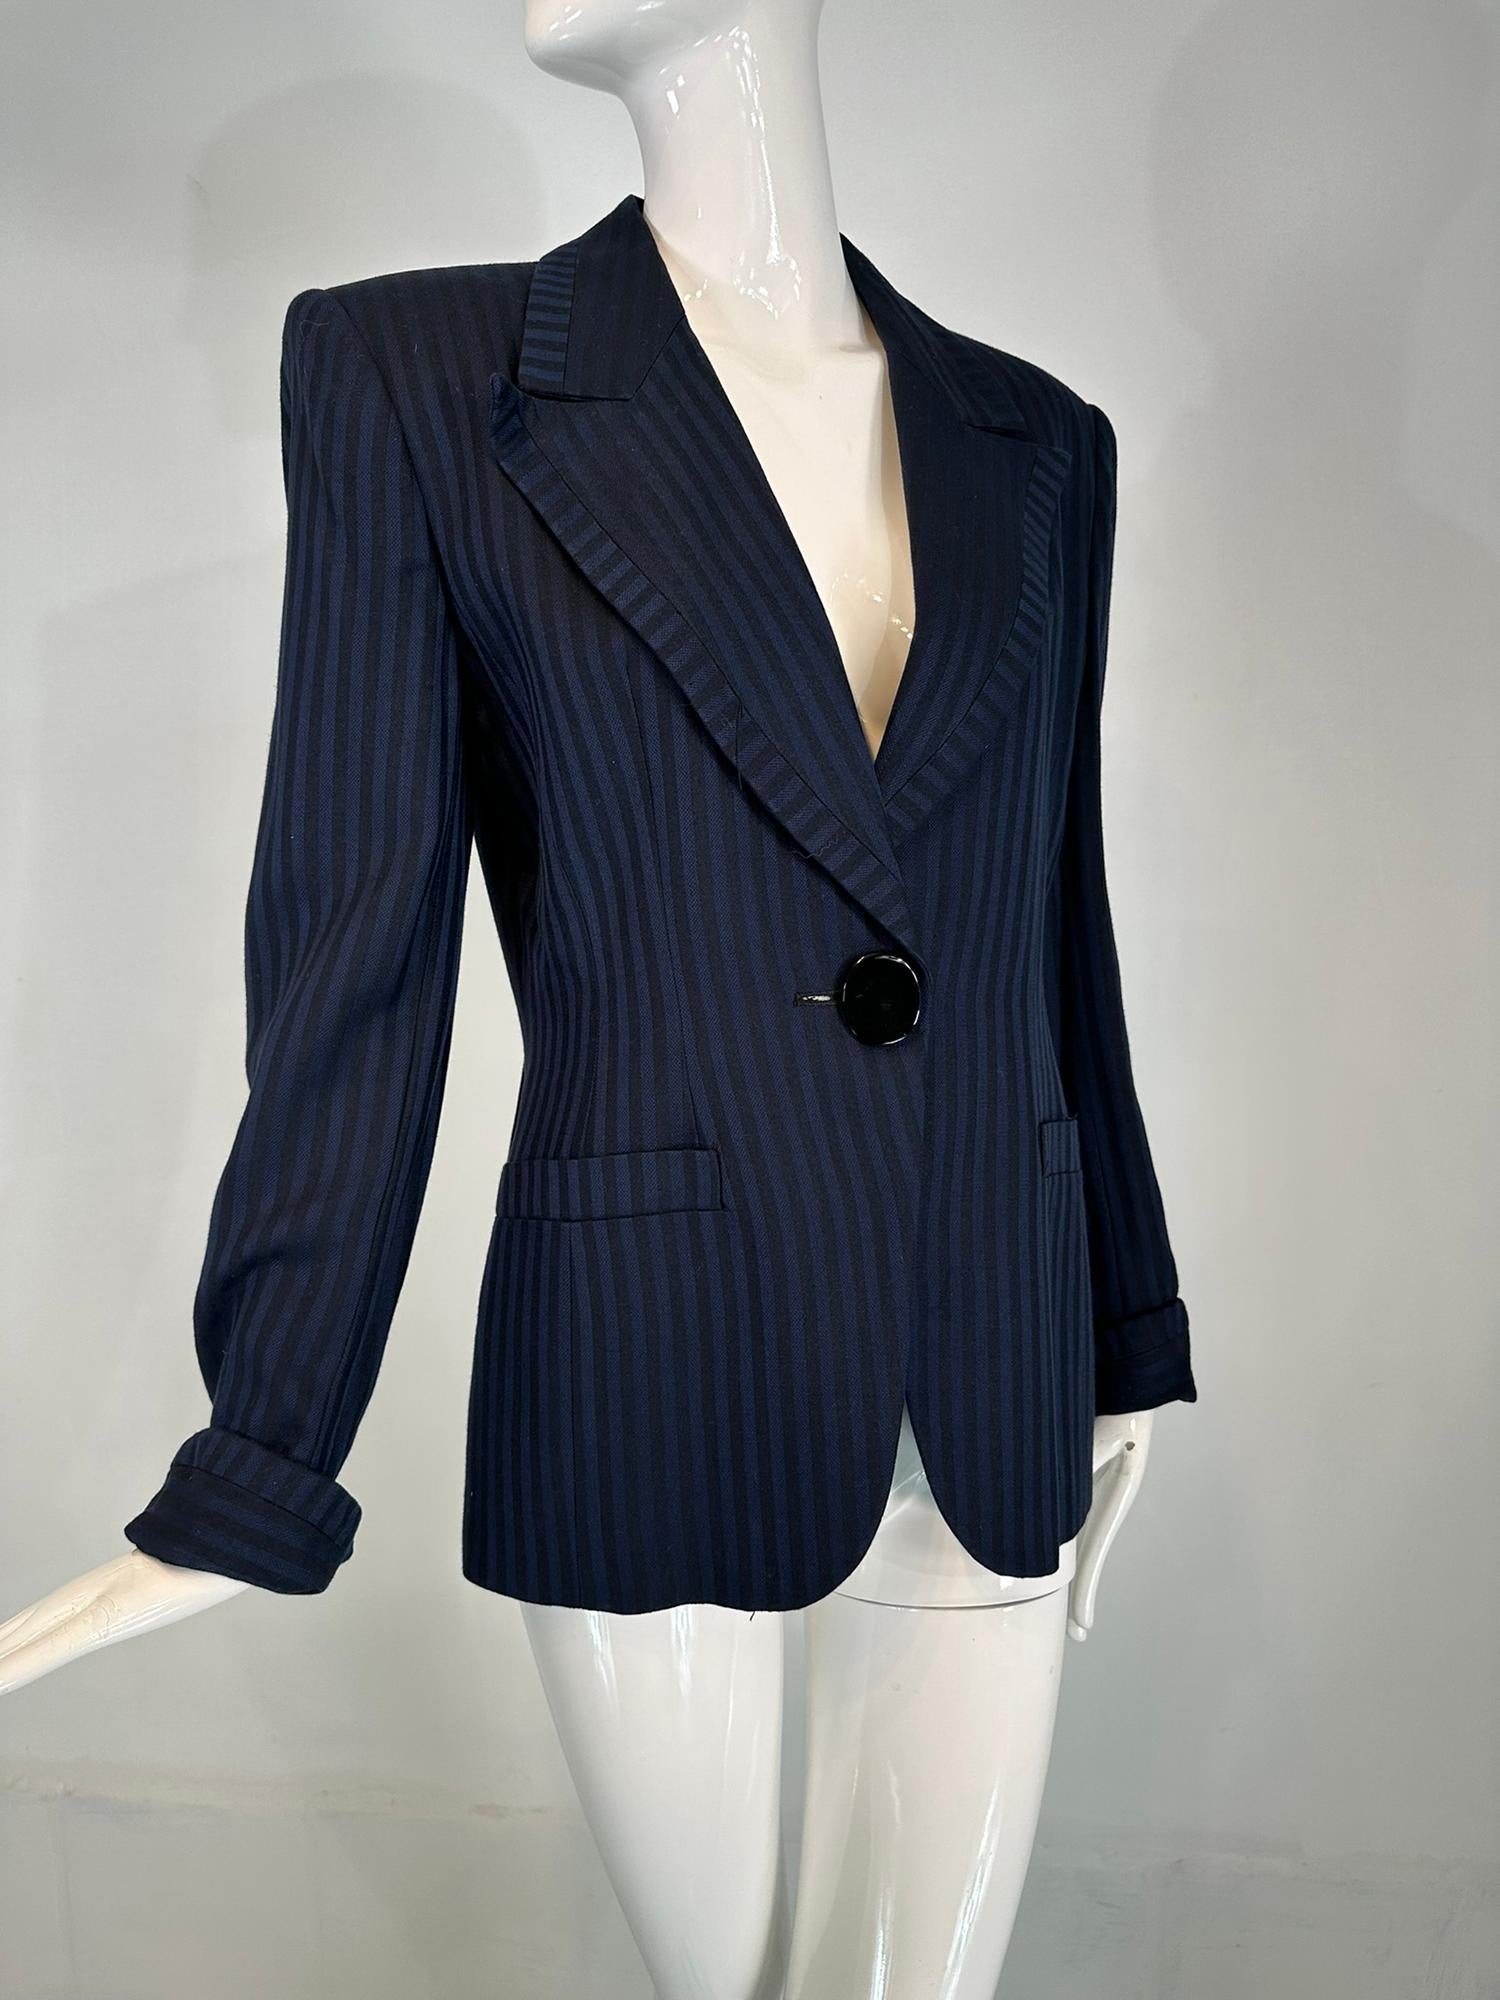 Veste en sergé de laine à larges rayures bleu marine et noir Christian Dior fin des années 1990 début des années 2000. Fermeture à la taille sur le devant par un gros bouton ovale noir. Les revers à larges encoches sont recouverts d'une bande de